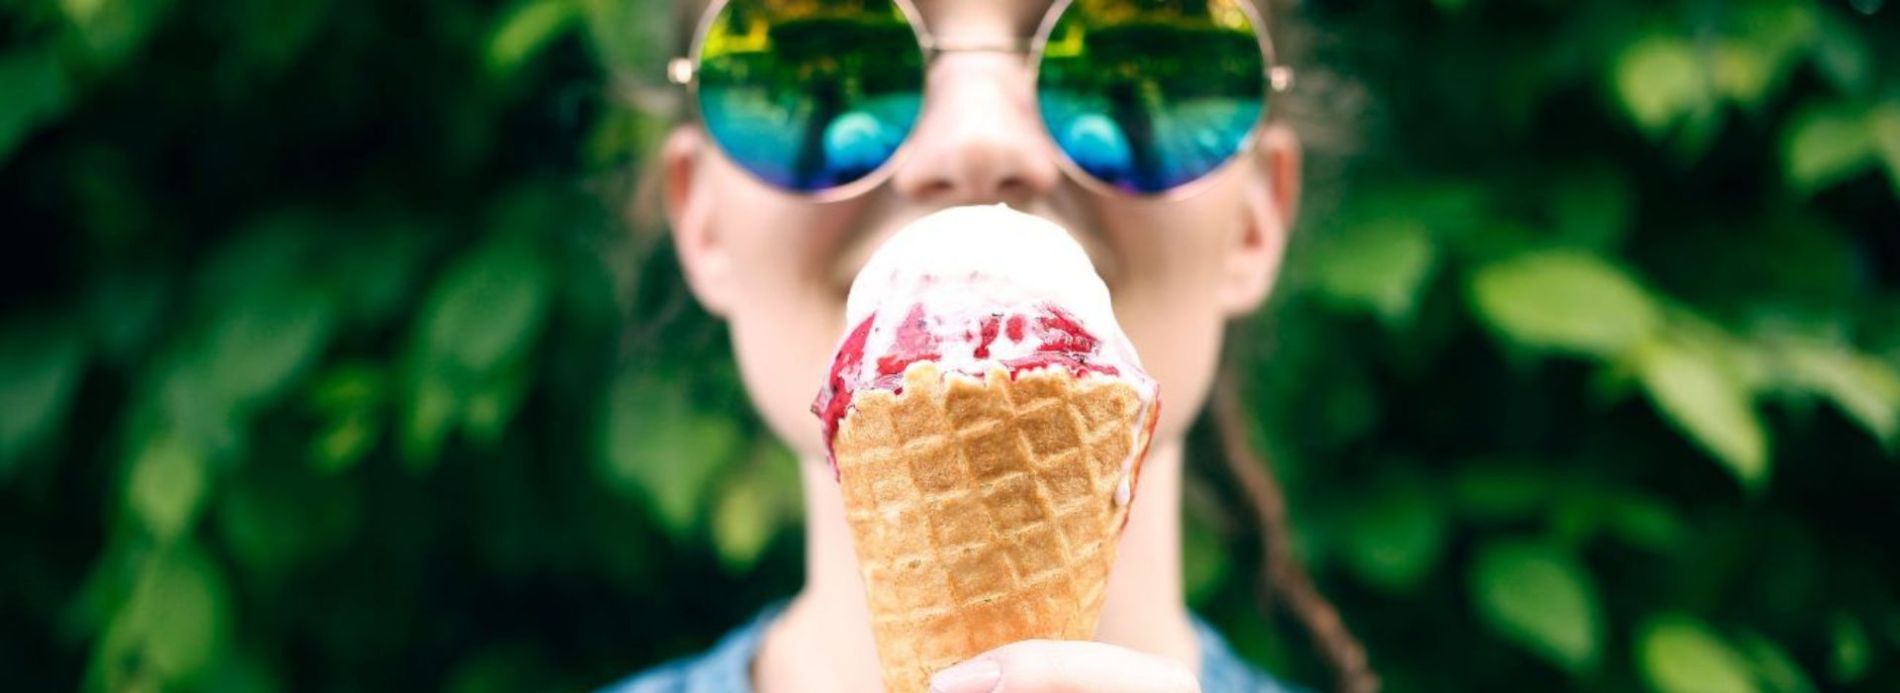 person in sunglasses with ice cream cone